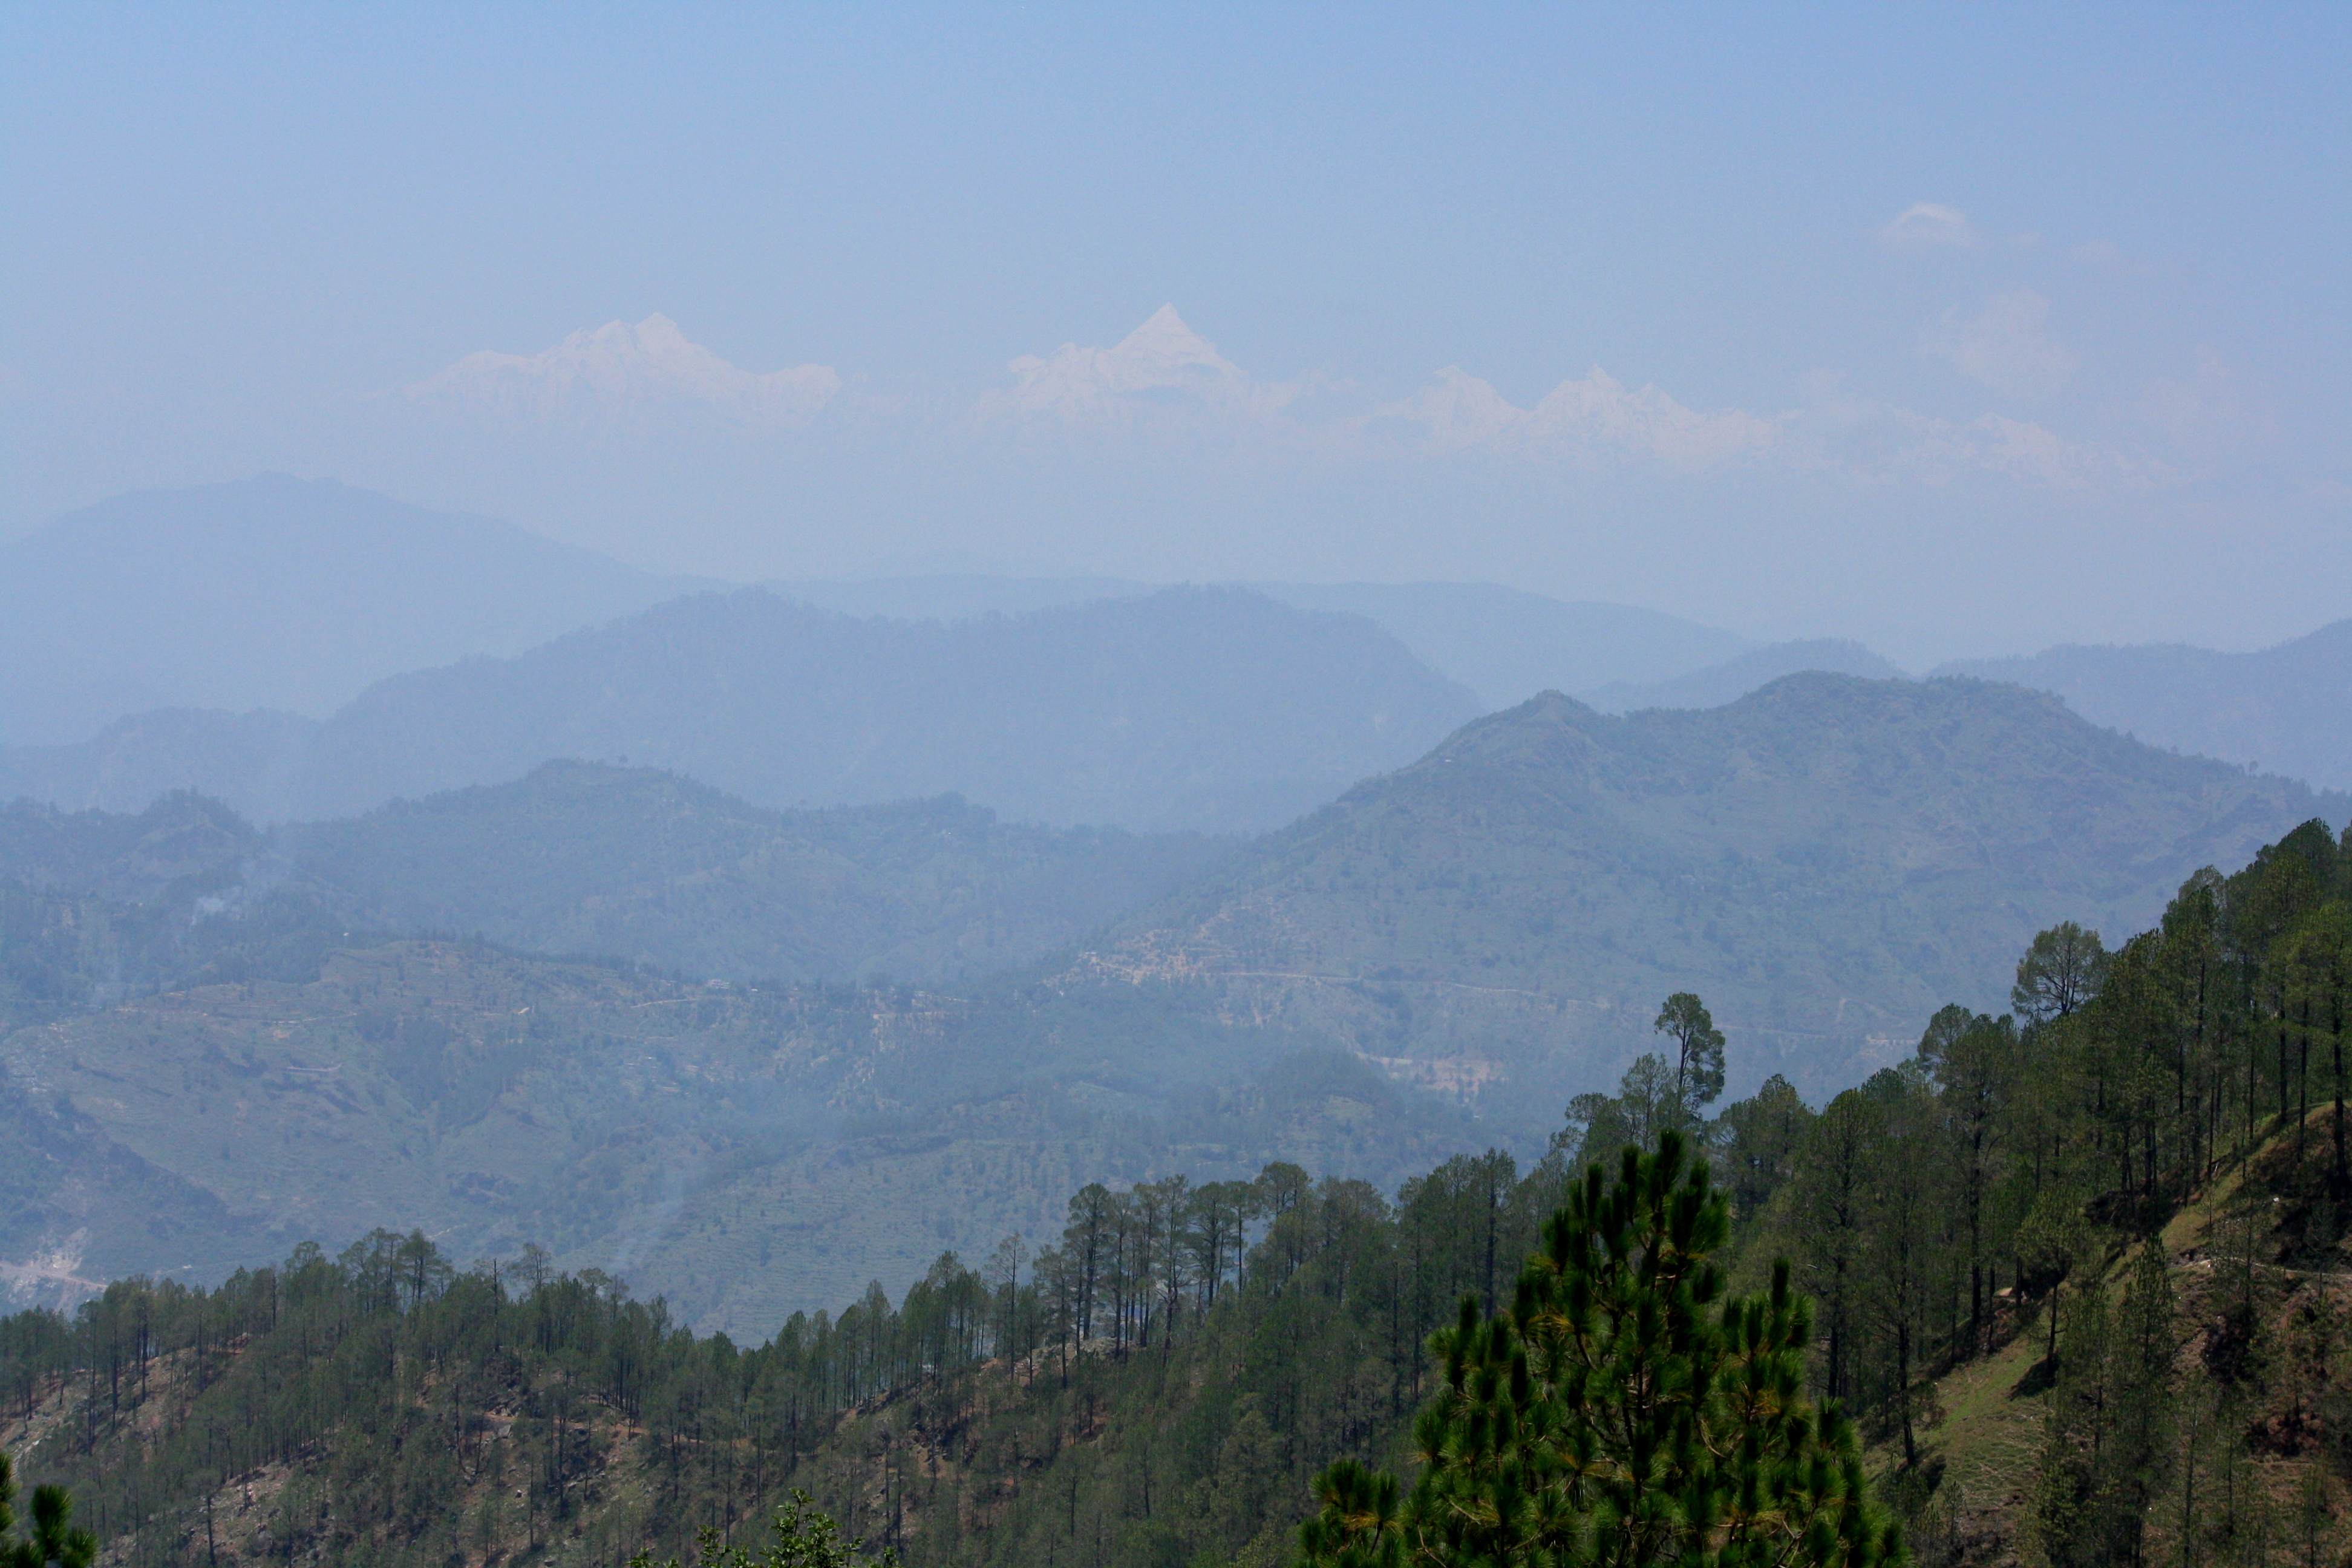 Forest landscape in Pithoragarh, Uttarakhand